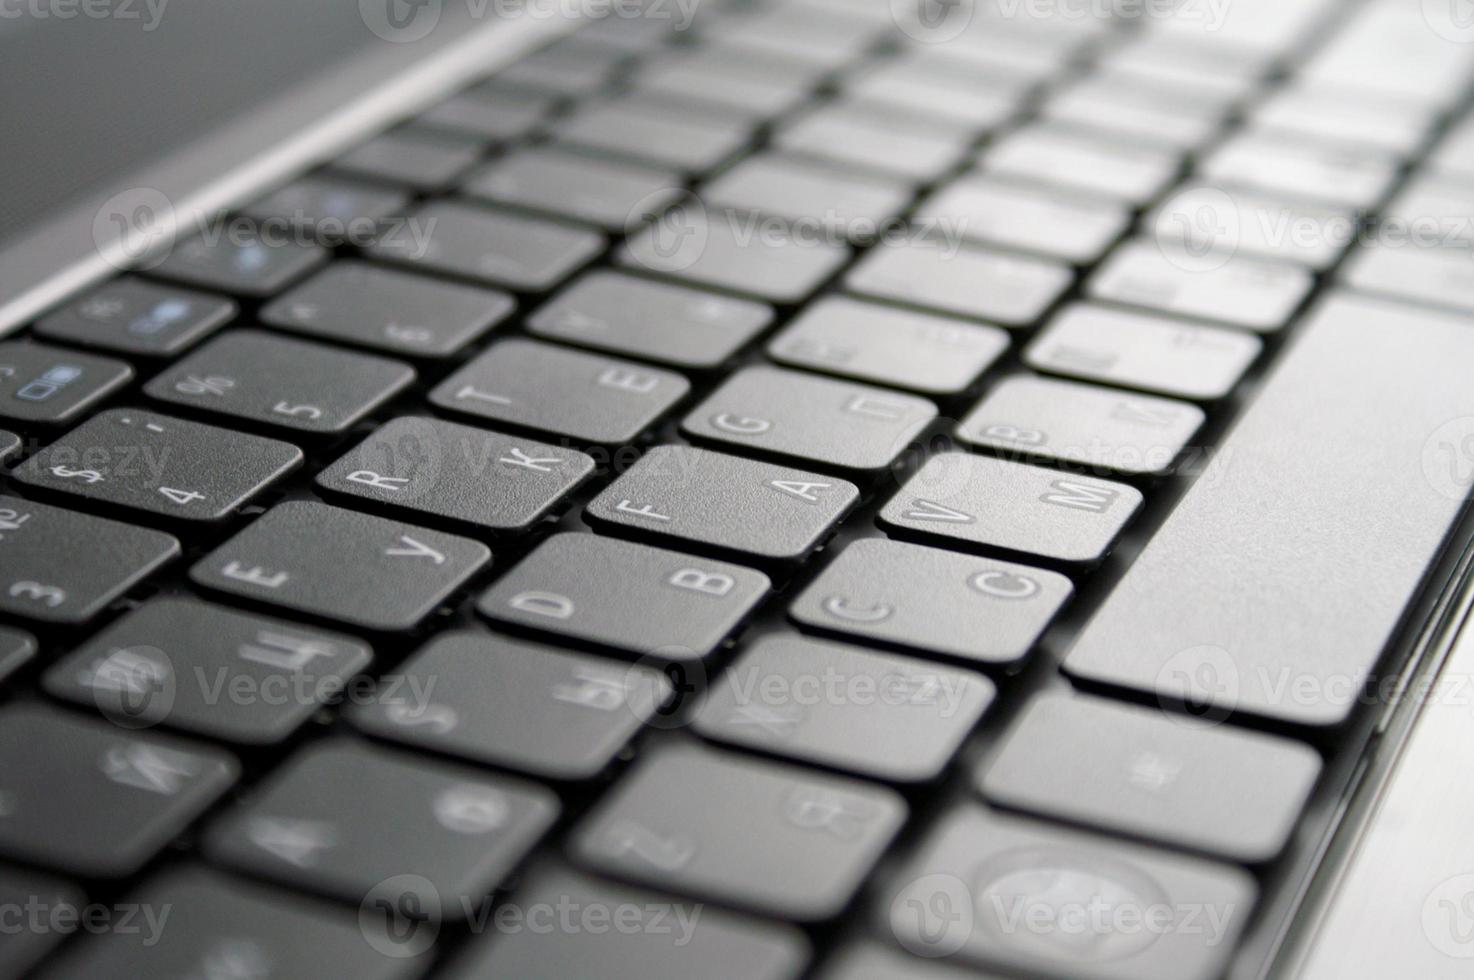 Herhaald Stadscentrum Spin schone nieuwe laptop met Russisch toetsenbord 4739460 Stockfoto